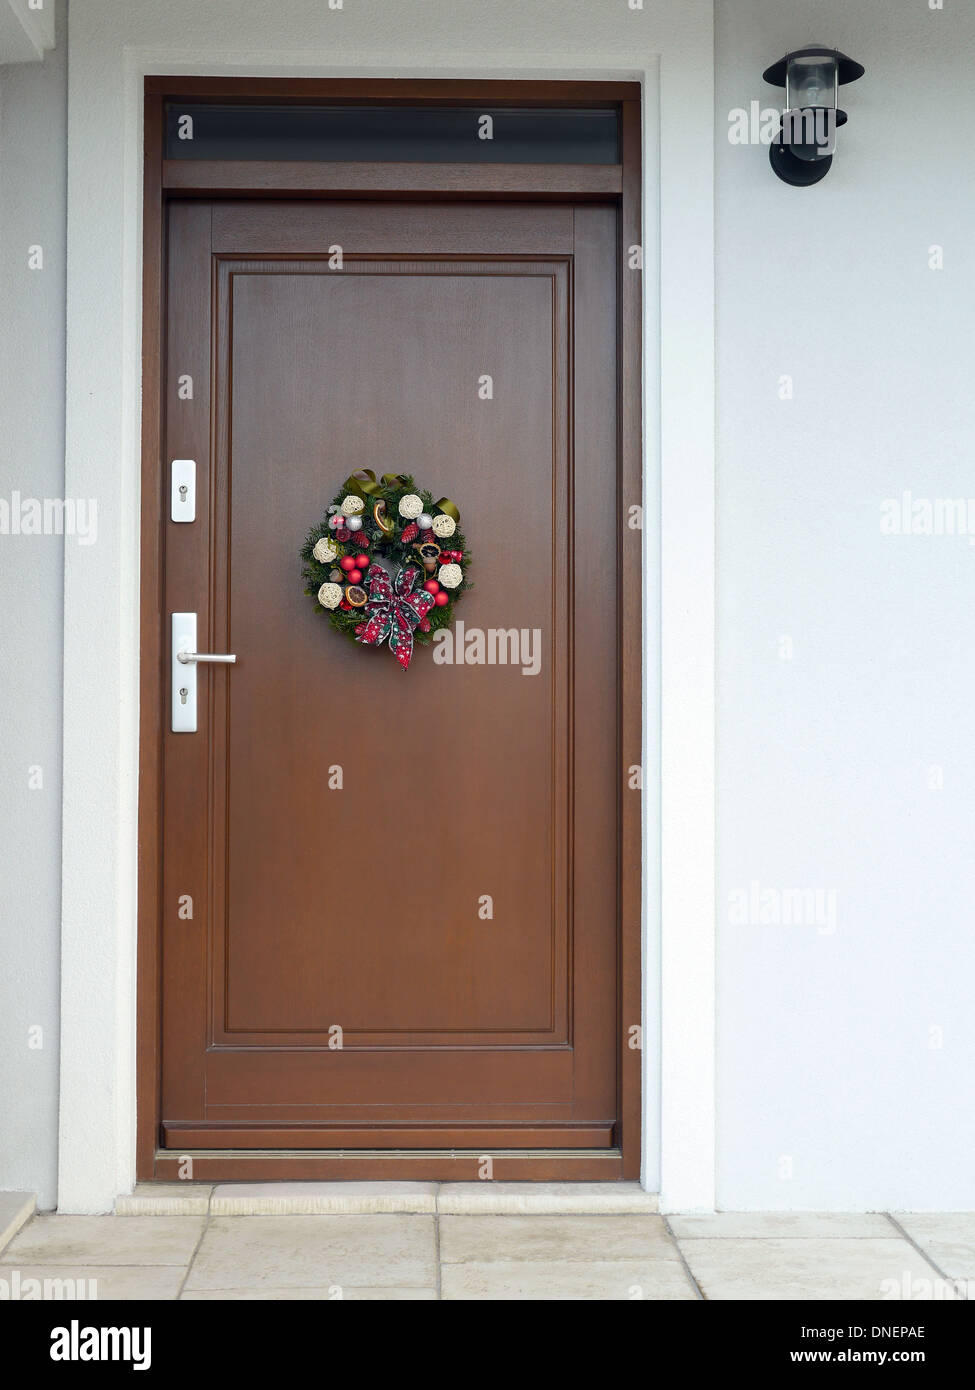 Con decoraciones de Navidad y la cinta bow conectado a la puerta de madera Foto de stock